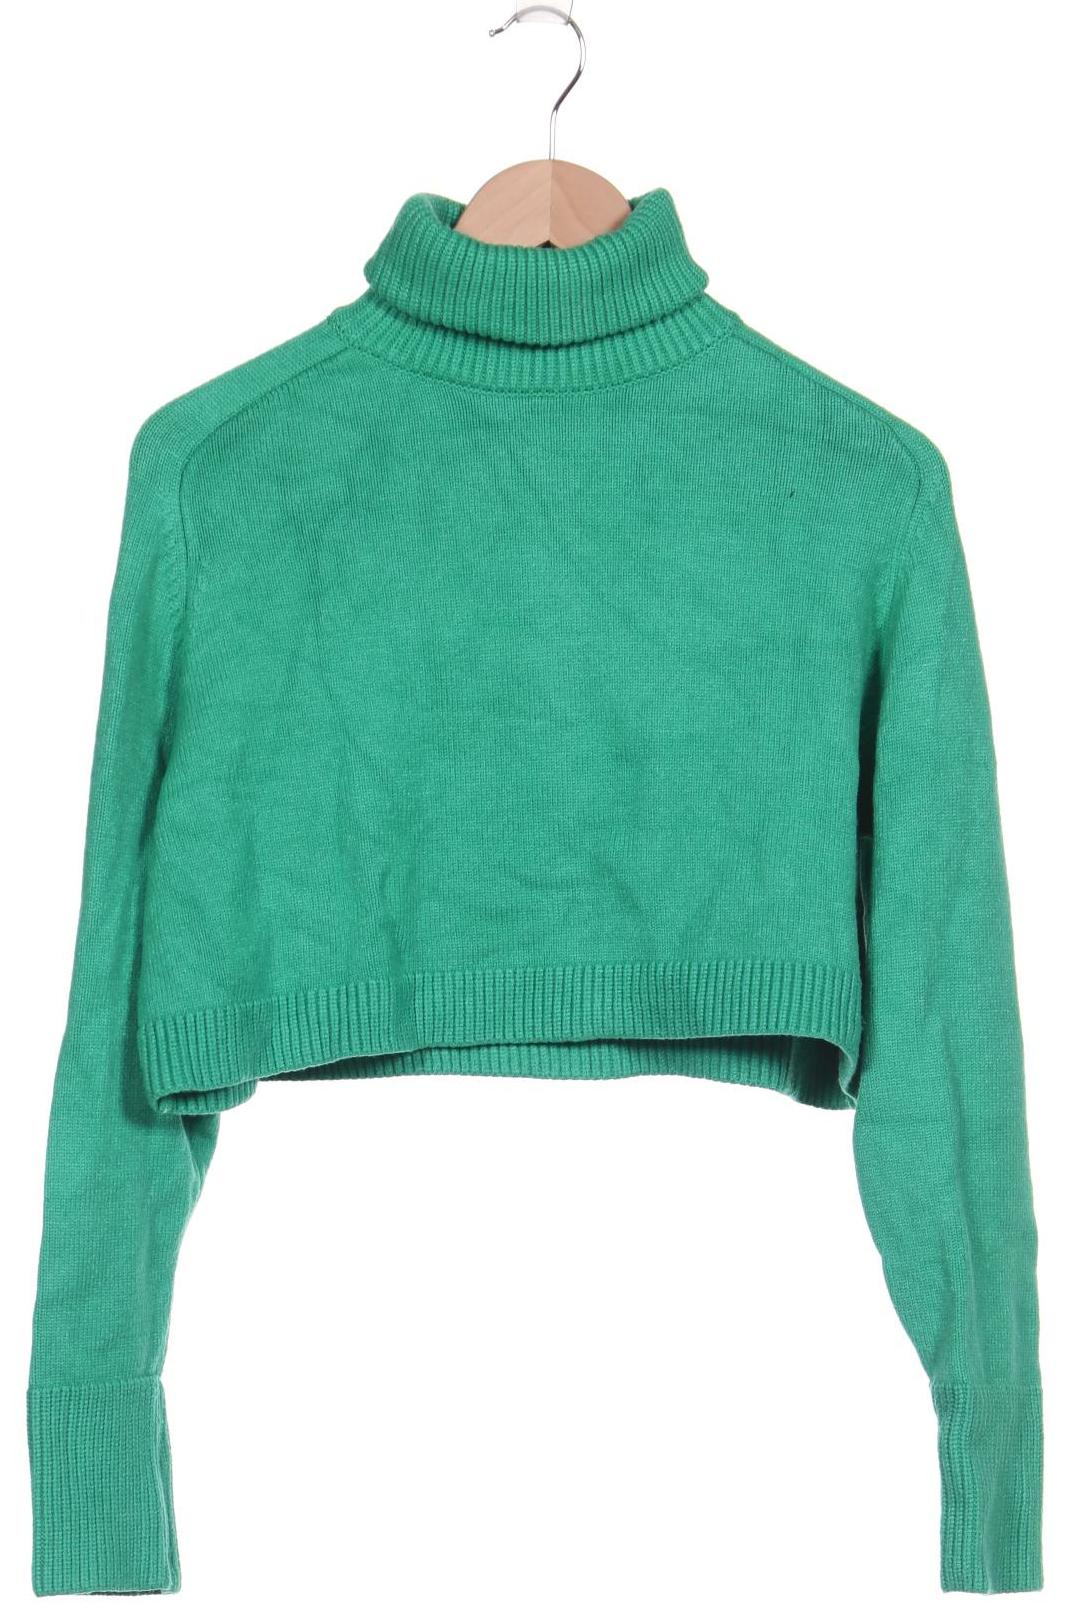 ZARA Damen Pullover, grün von ZARA